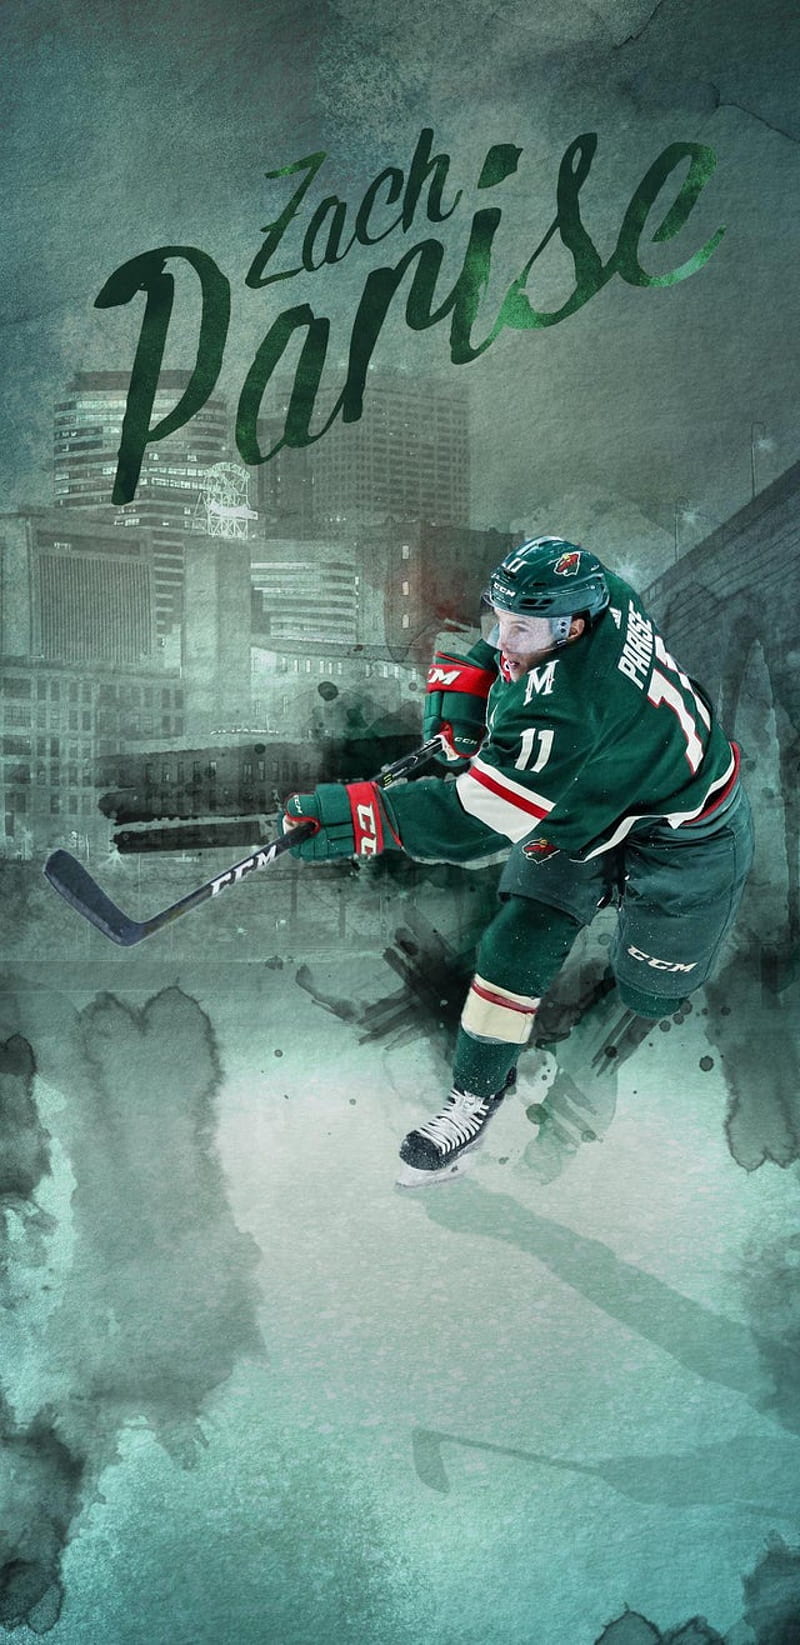 Minnesota Wild (NHL) iPhone X/XS/XR Lock Screen Wallpaper